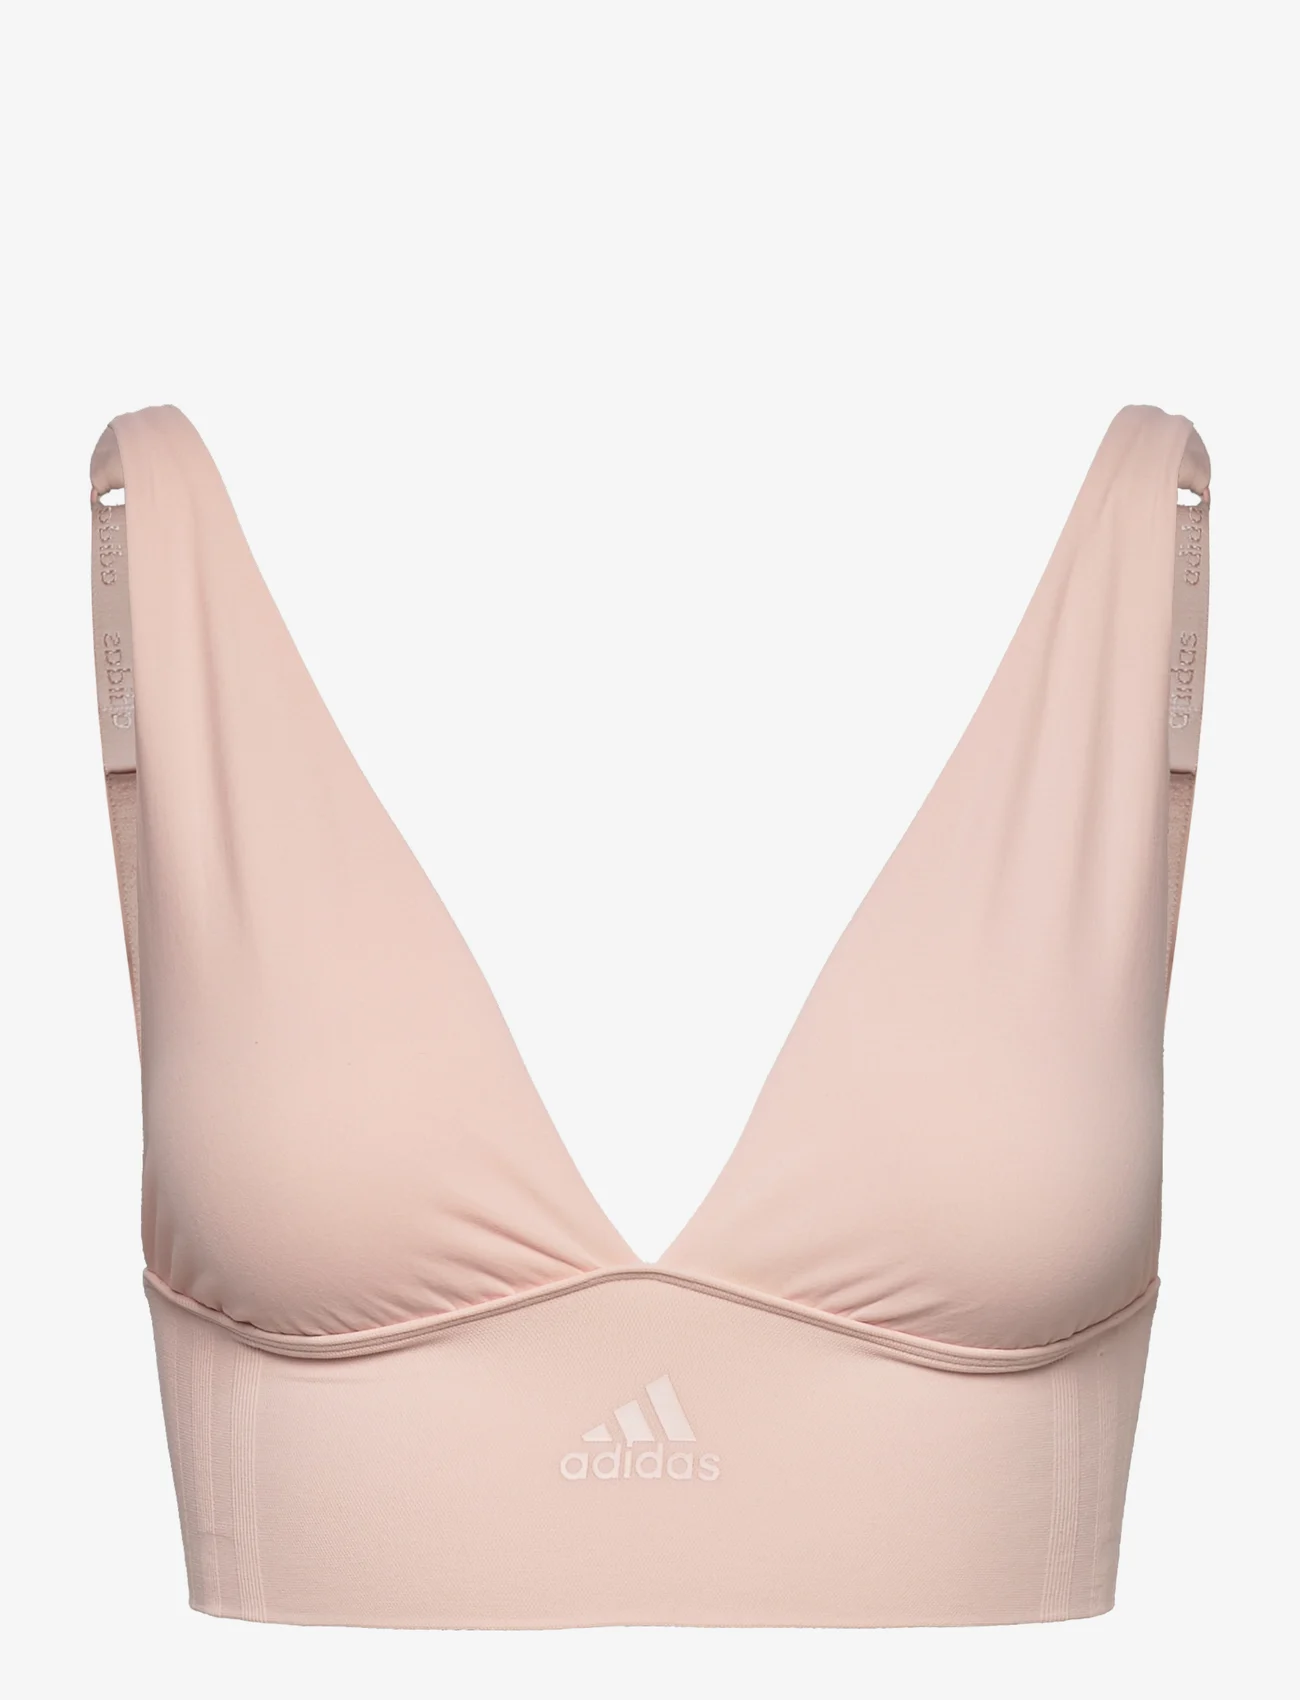 adidas Underwear - Bustier - bralette - rose melange - 0